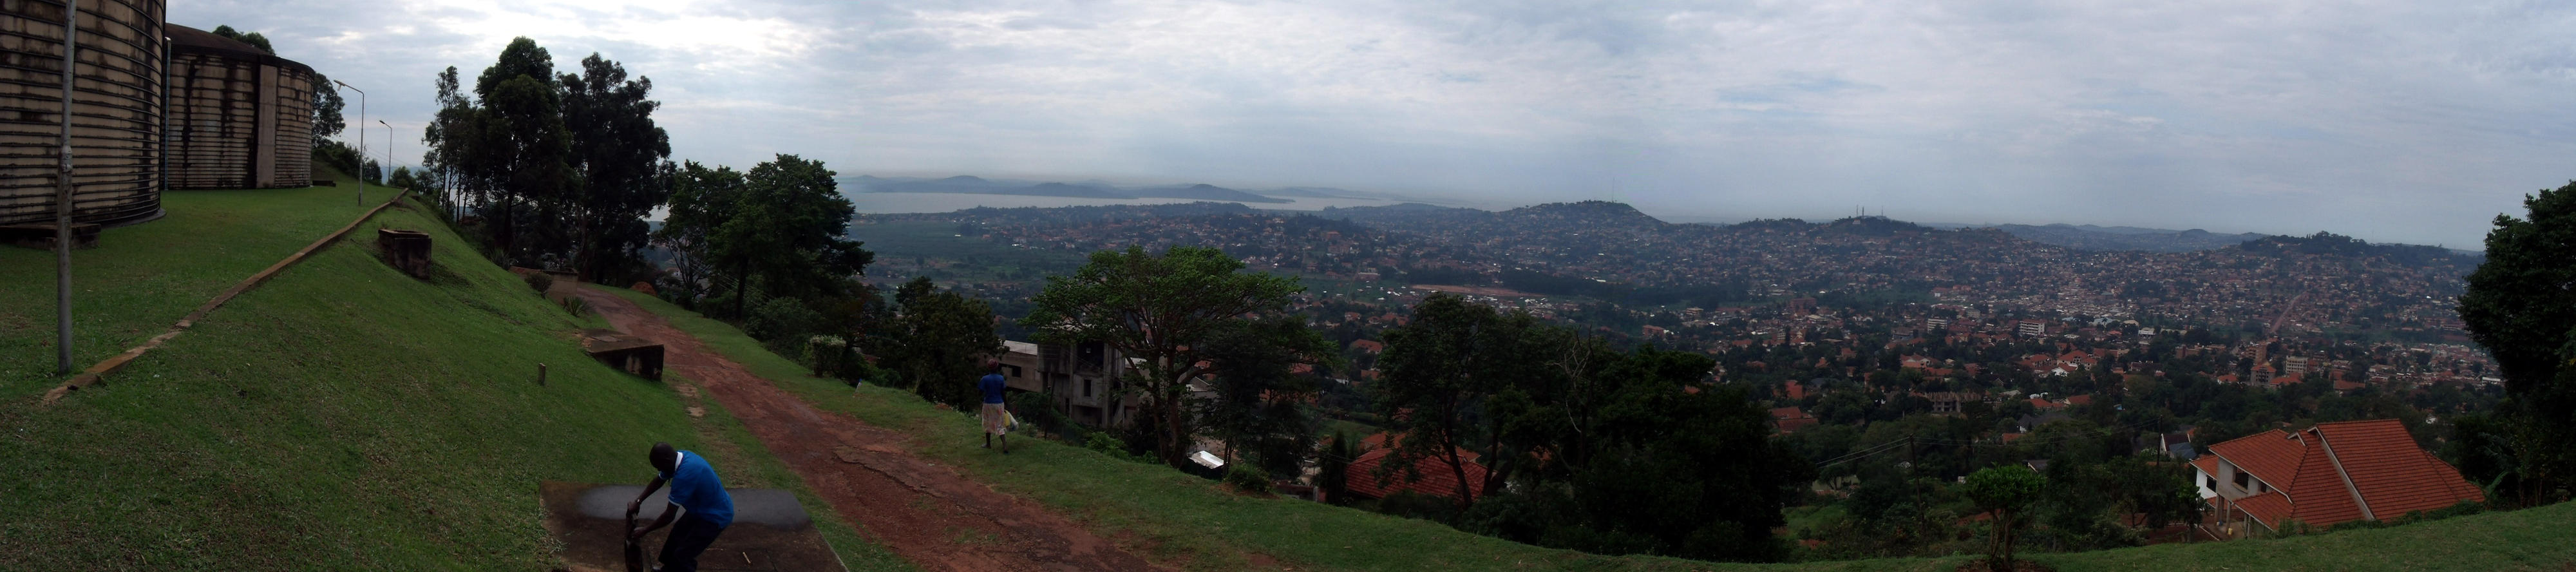 Blick auf Kampala, die Hauptstadt von Uganda 